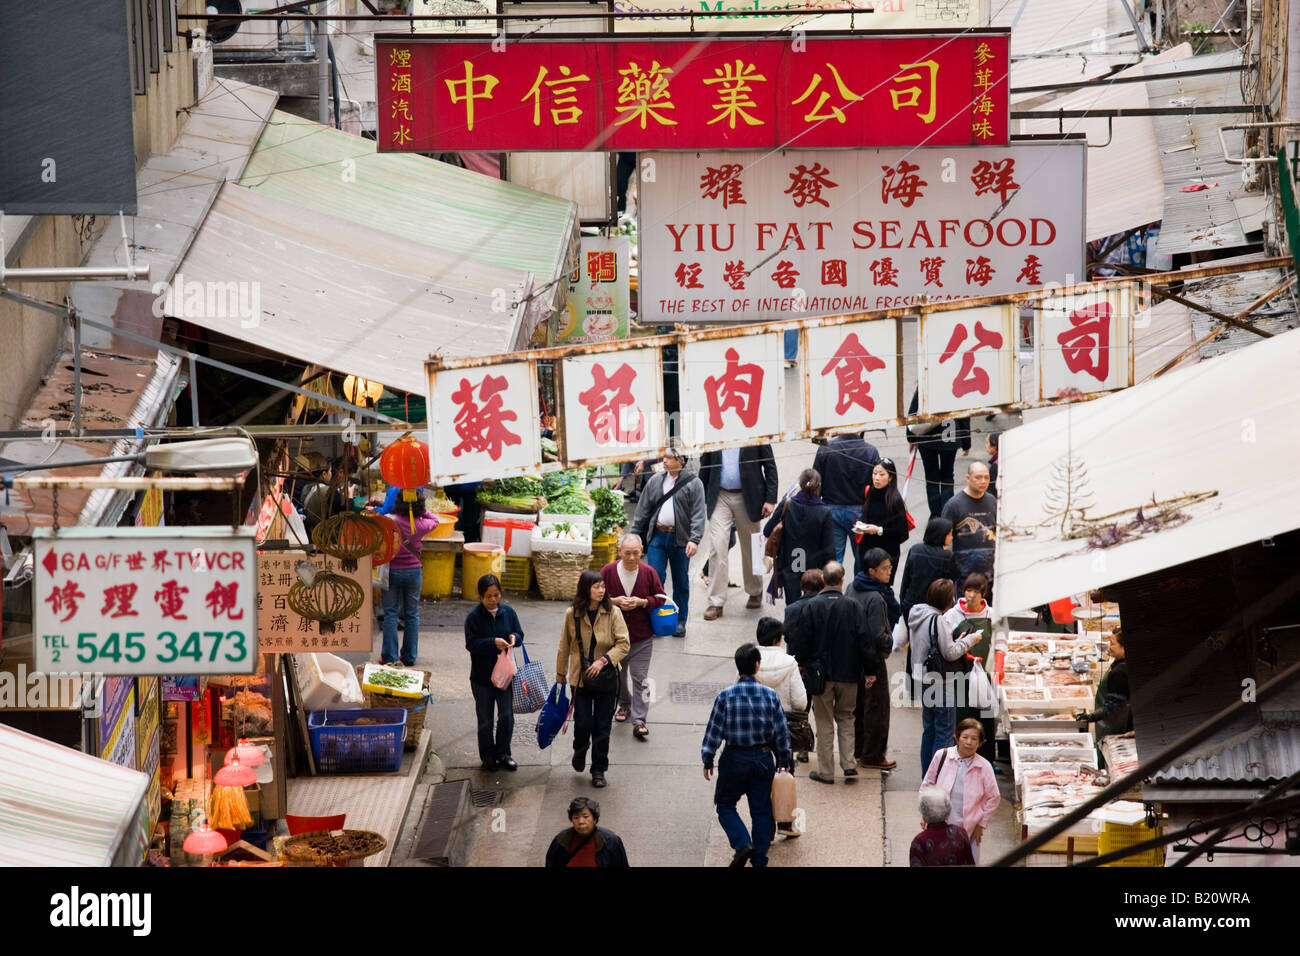 Traditionelle alte chinesische Soho Lebensmittelmarkt Gage Street in der Nähe von Sheung Wan Hong Kong China Stockfoto